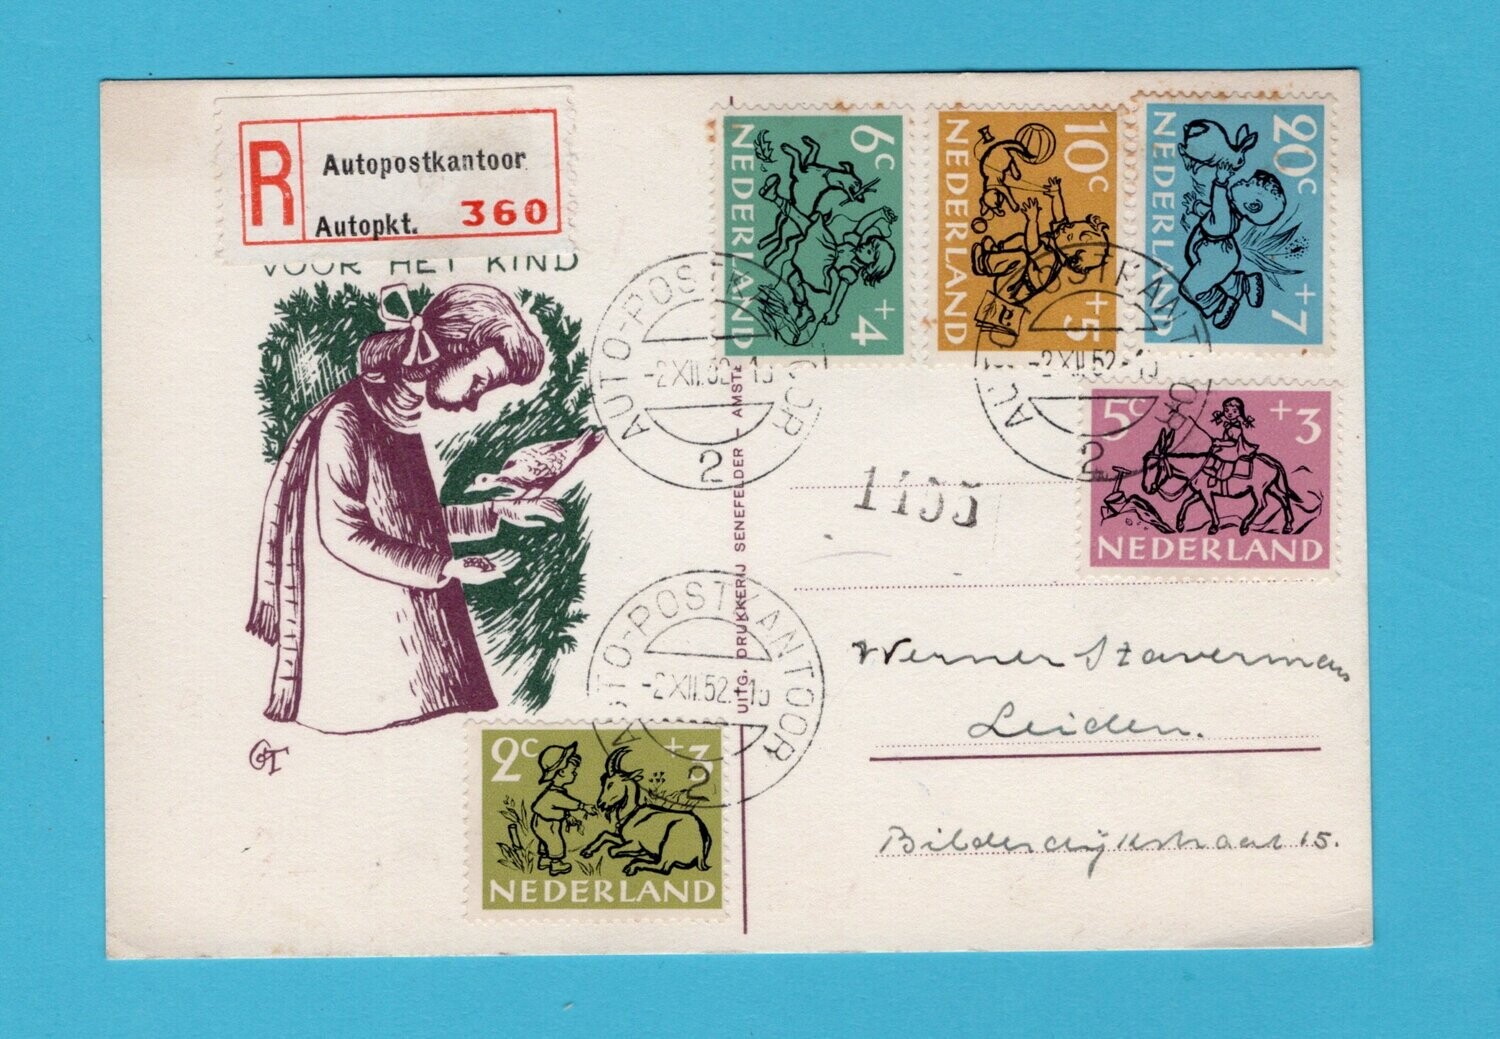 NEDERLAND R briefkaart 1952 Auto postkantoor naar Leiden